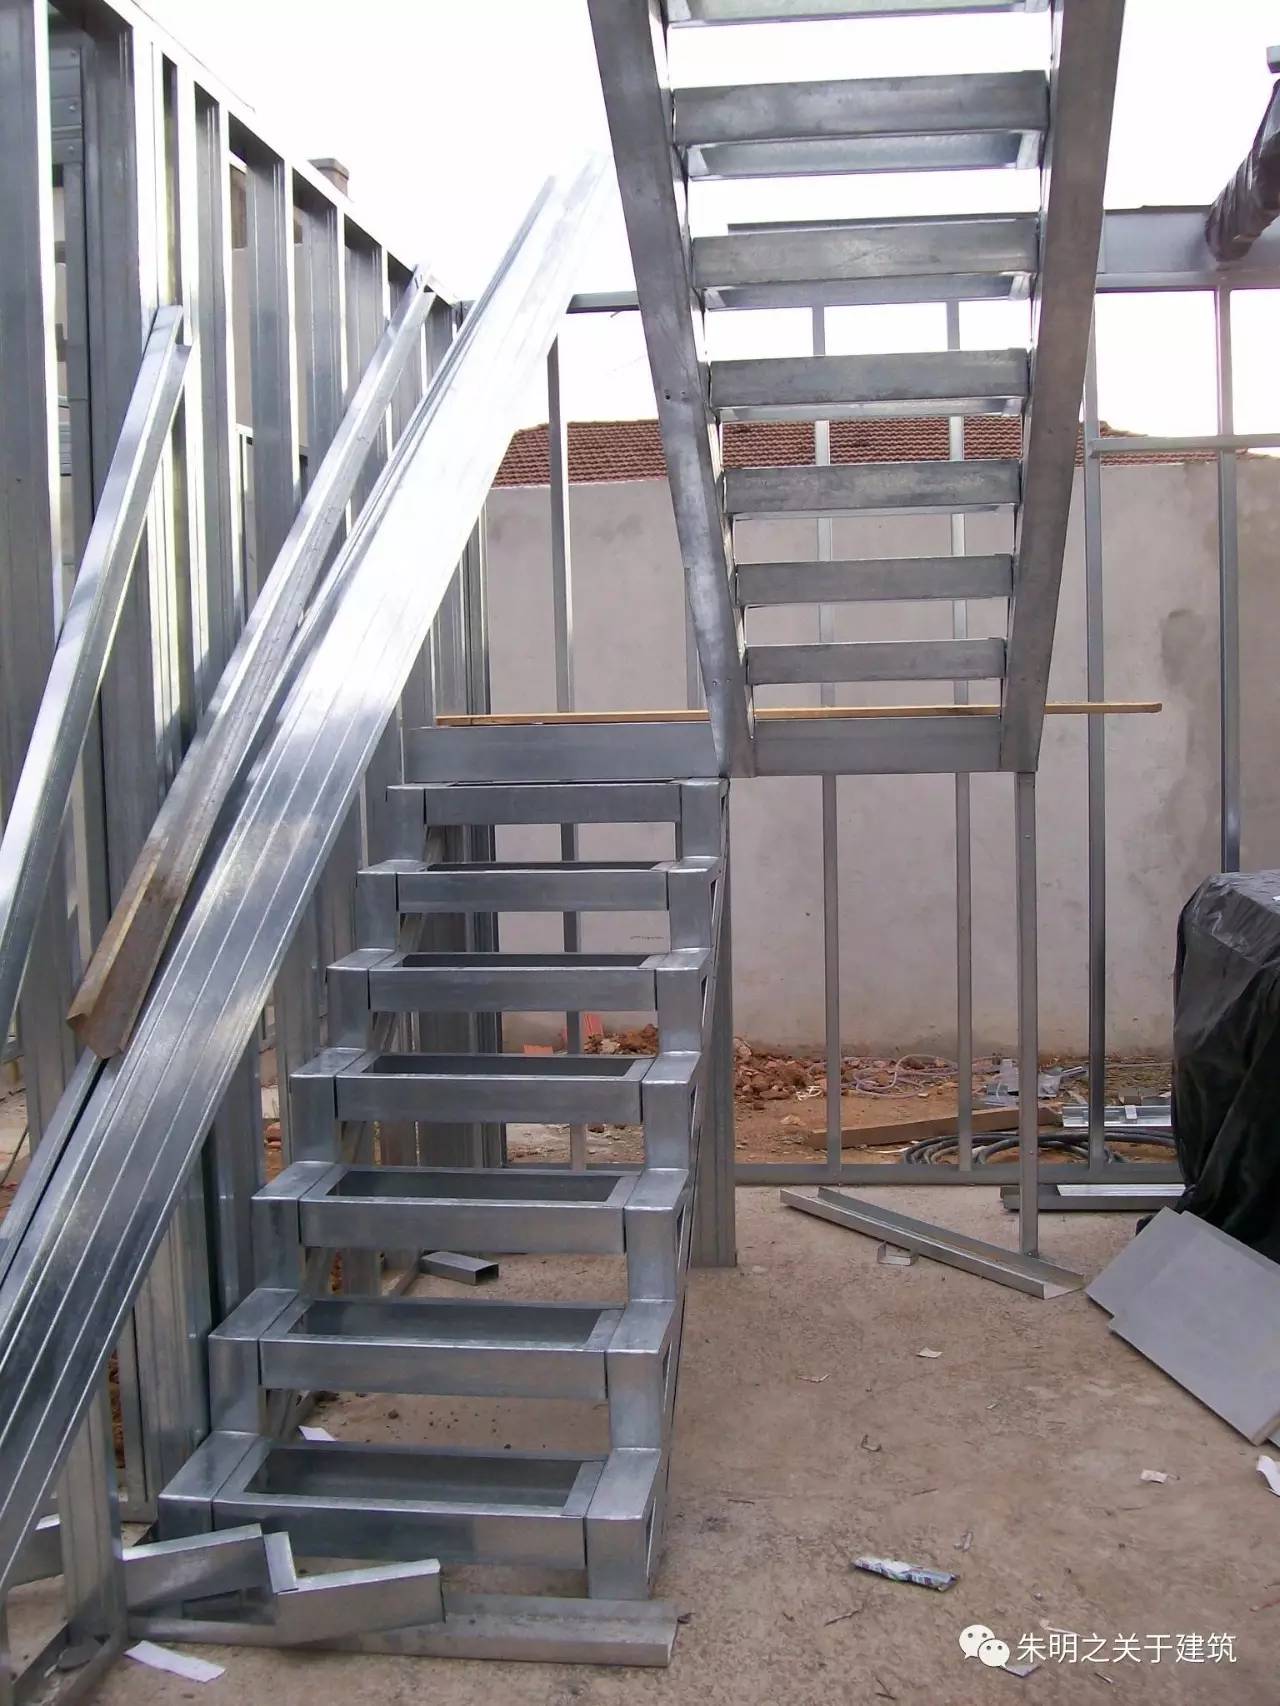 冷弯薄壁型钢体系案例汇总之《楼梯》